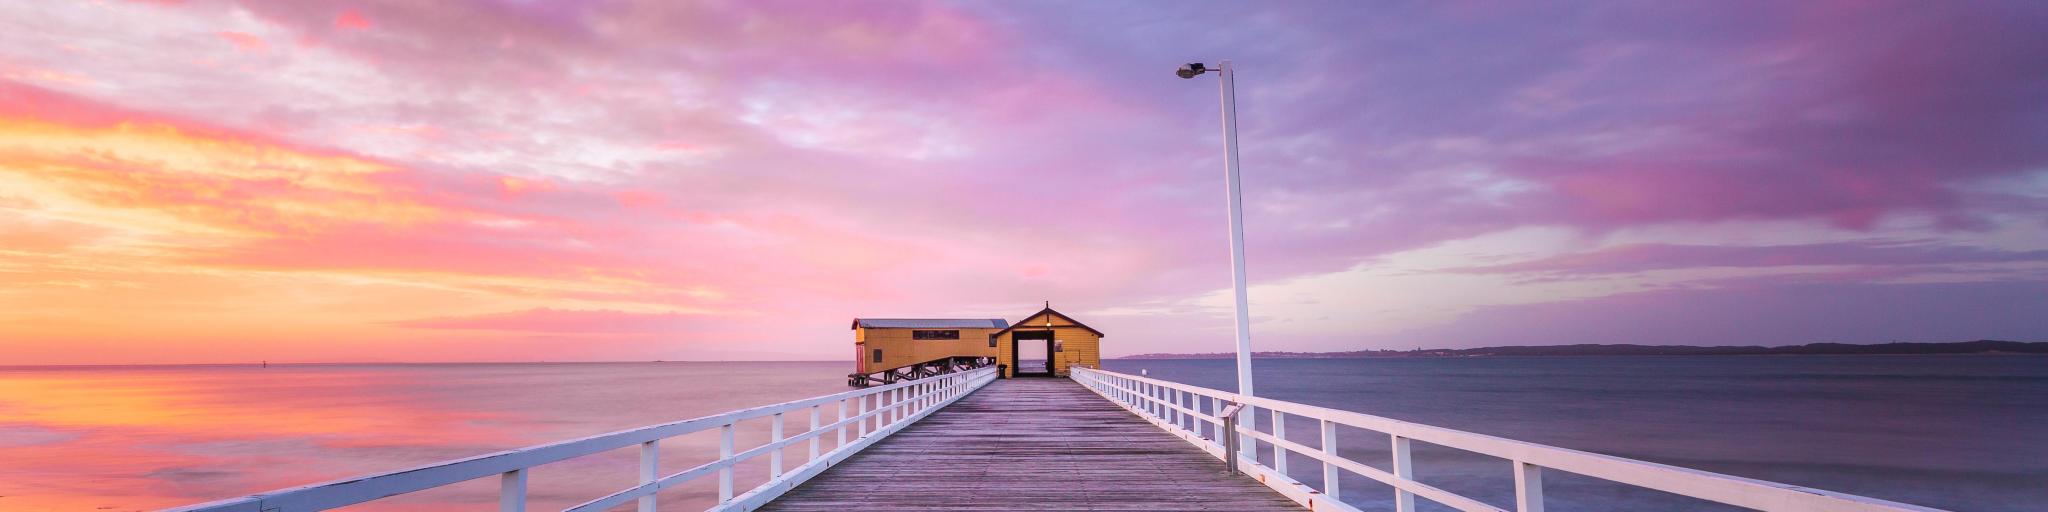 Beautiful Sunrise At Queenscliff Pier, Victoria, Australia.